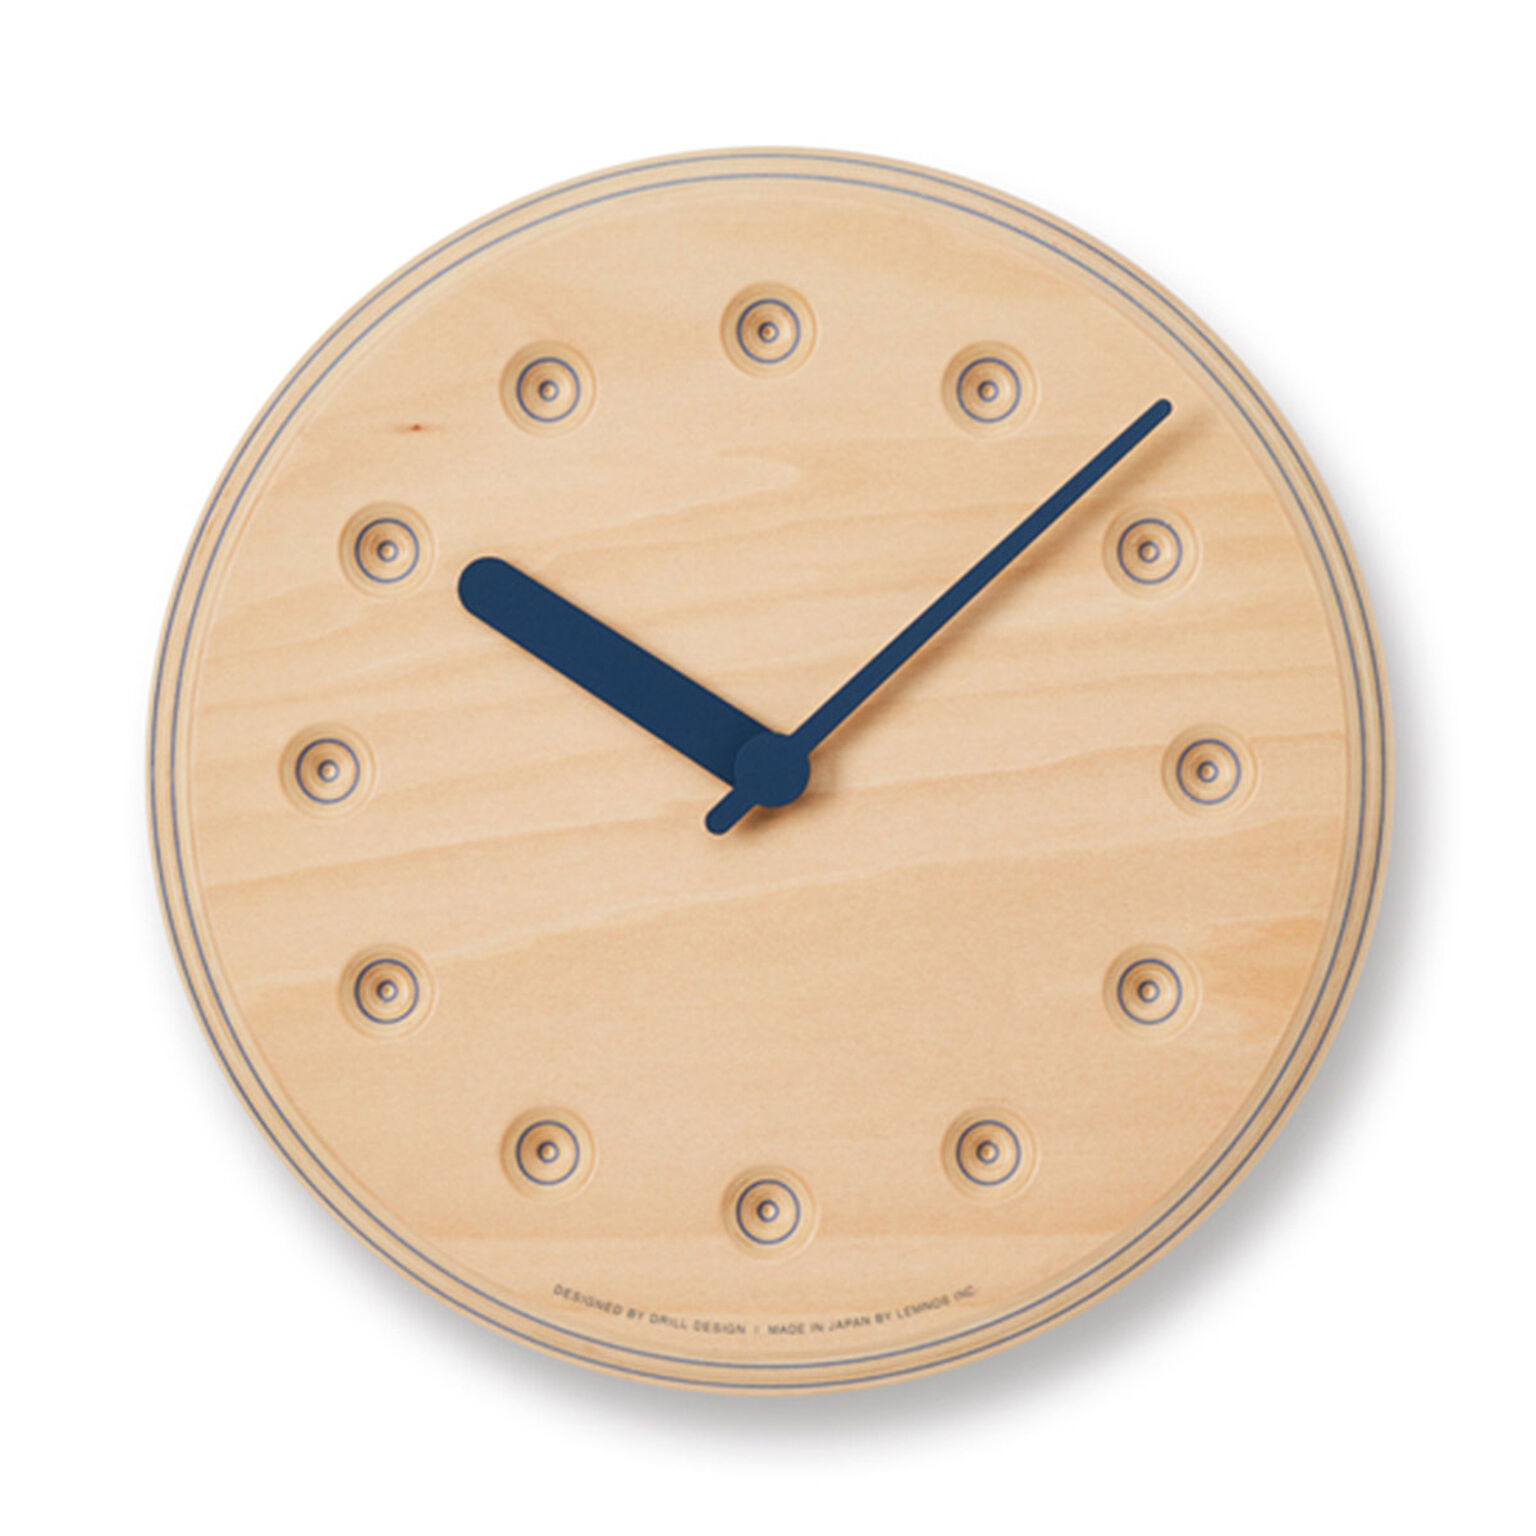 掛け時計 壁掛け時計 おしゃれ 北欧 Paper-Wood CLOCK dot ペーパーウッドクロック 22cm 木製 ナチュラル DRL19-07 時計  モダン シンプル かわいい リビング